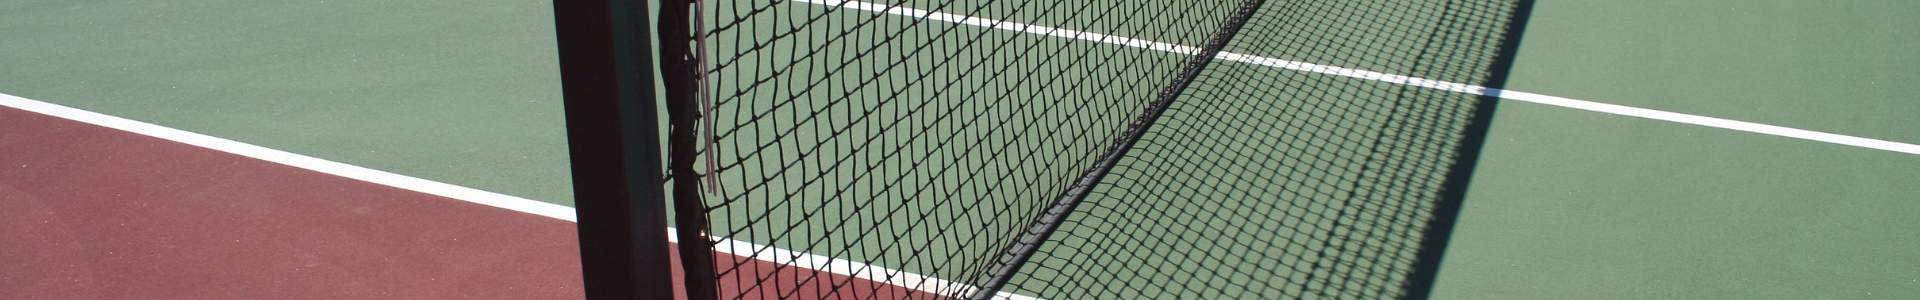 Concevoir un terrain de tennis en béton<br />
drainant